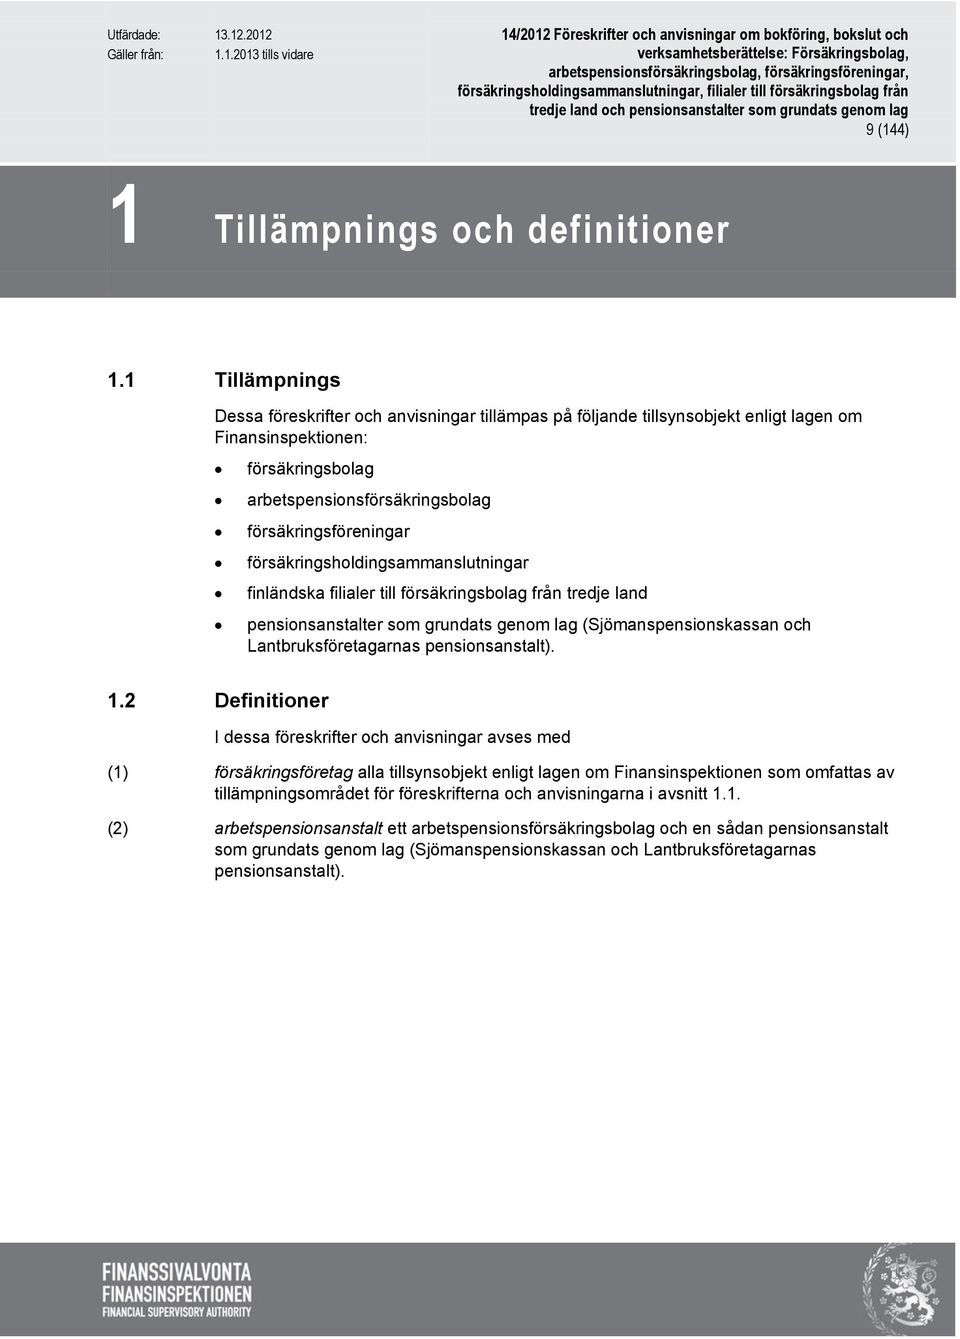 försäkringsholdingsammanslutningar finländska filialer till försäkringsbolag från tredje land pensionsanstalter som grundats genom lag (Sjömanspensionskassan och Lantbruksföretagarnas